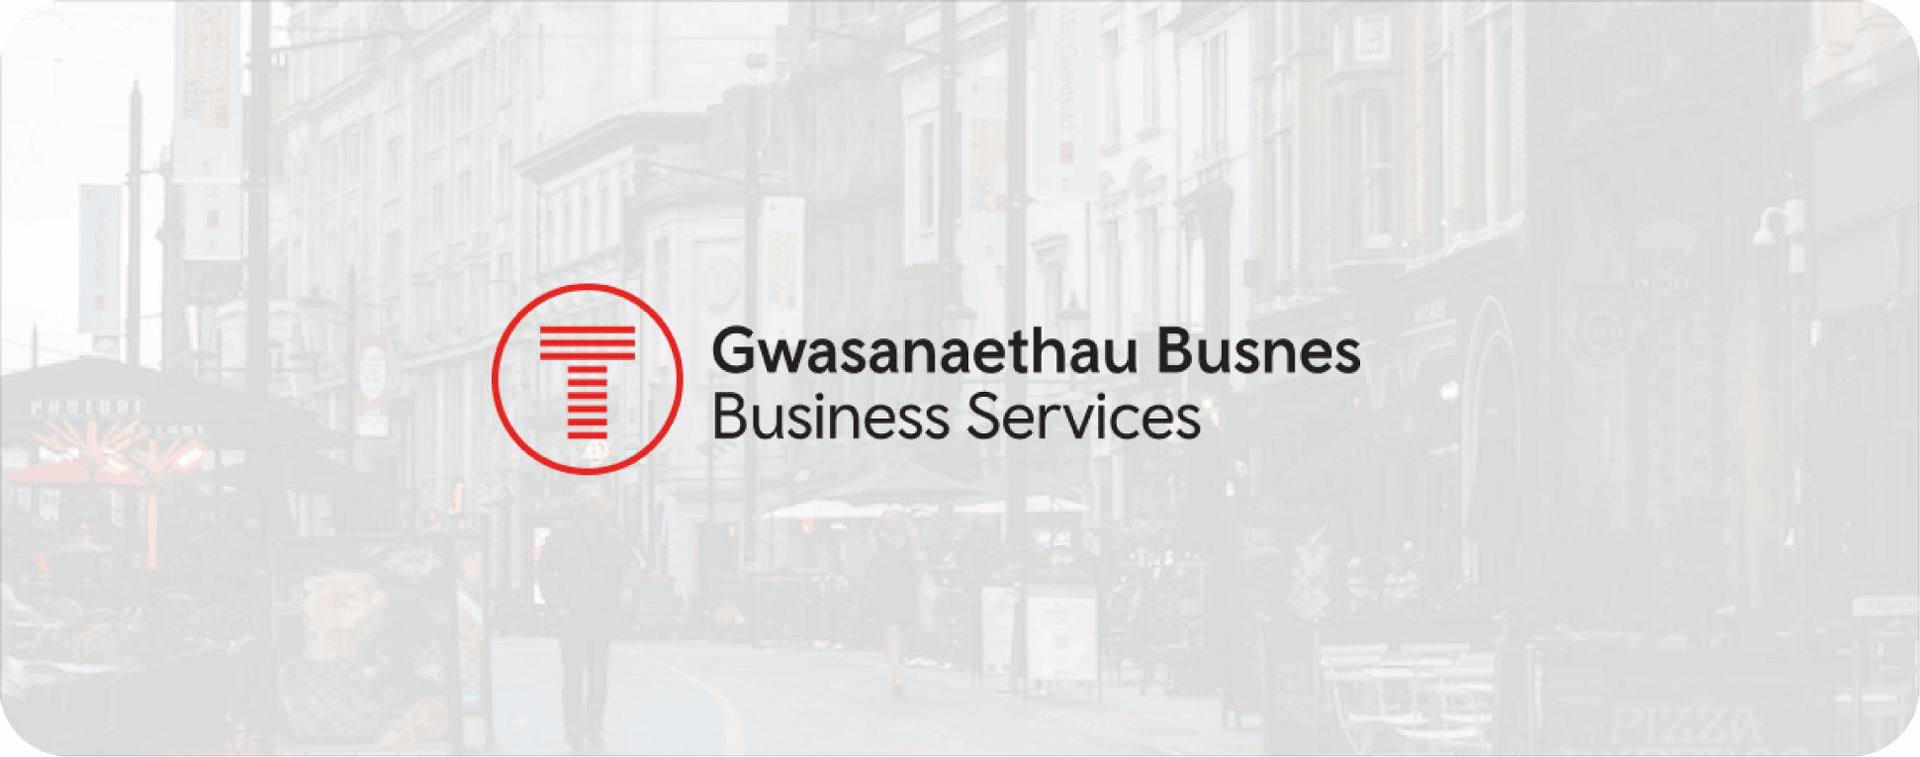 Gwasanaethau Busnes | Business Services